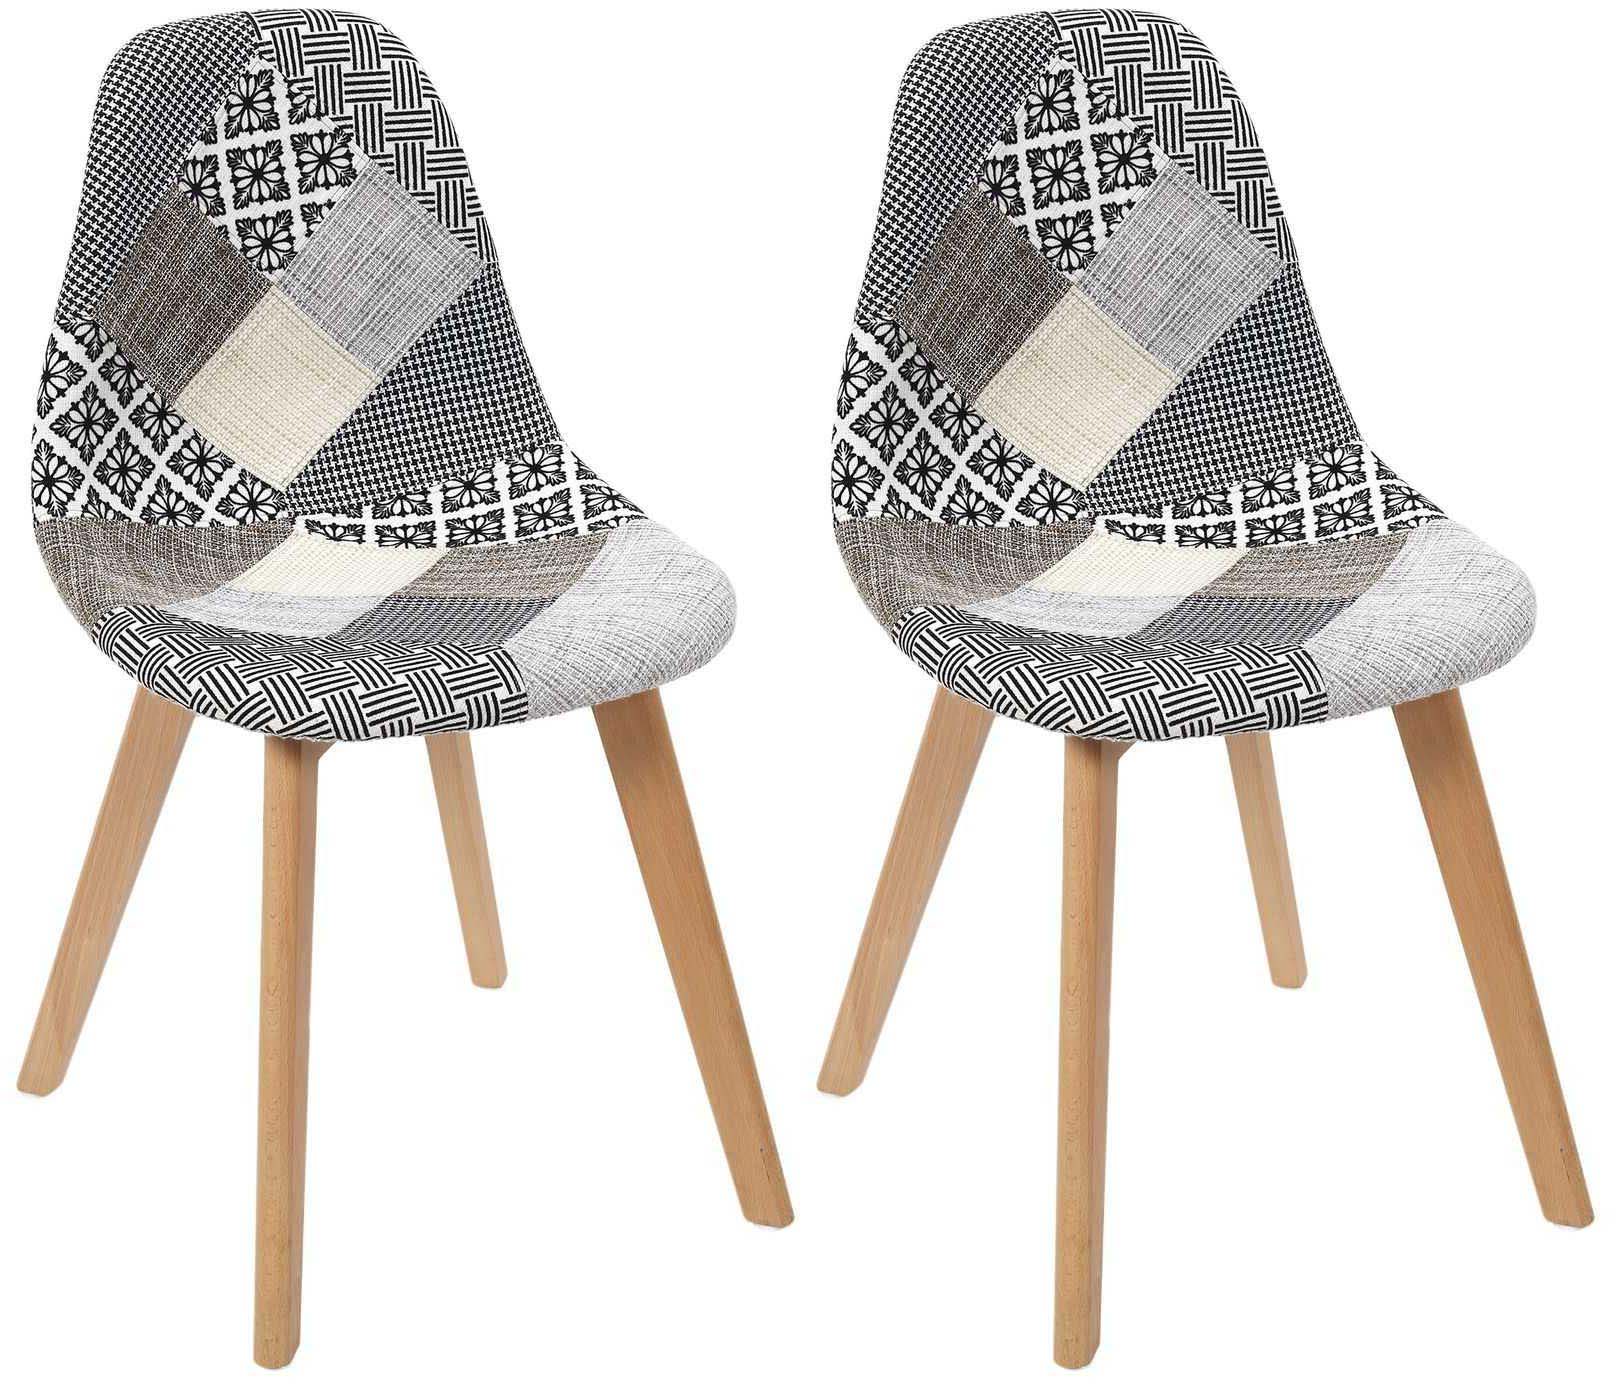 Chaise scandinave patchwork (lot de 2) (blanc)